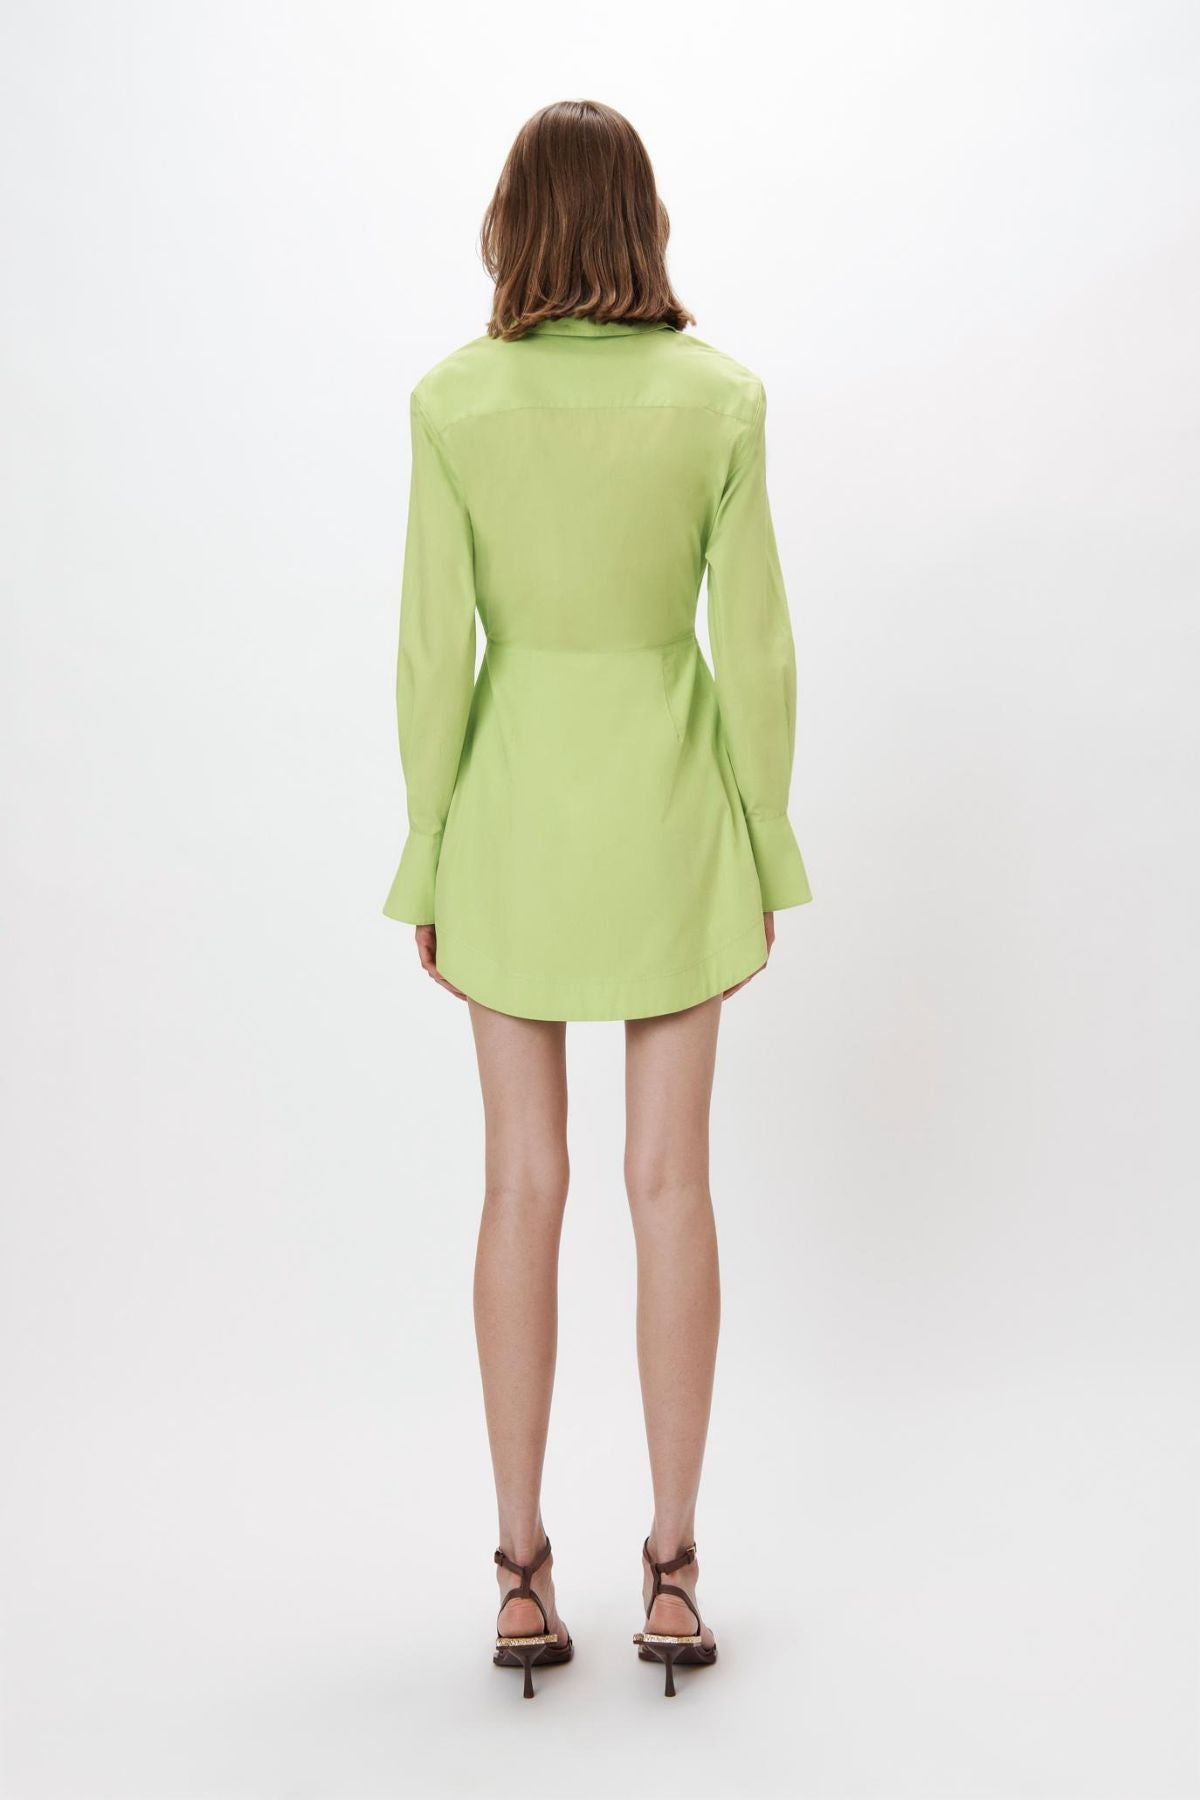 Simkhai Colbi Cotton Poplin Mini Shirt Dress - Acid Lime